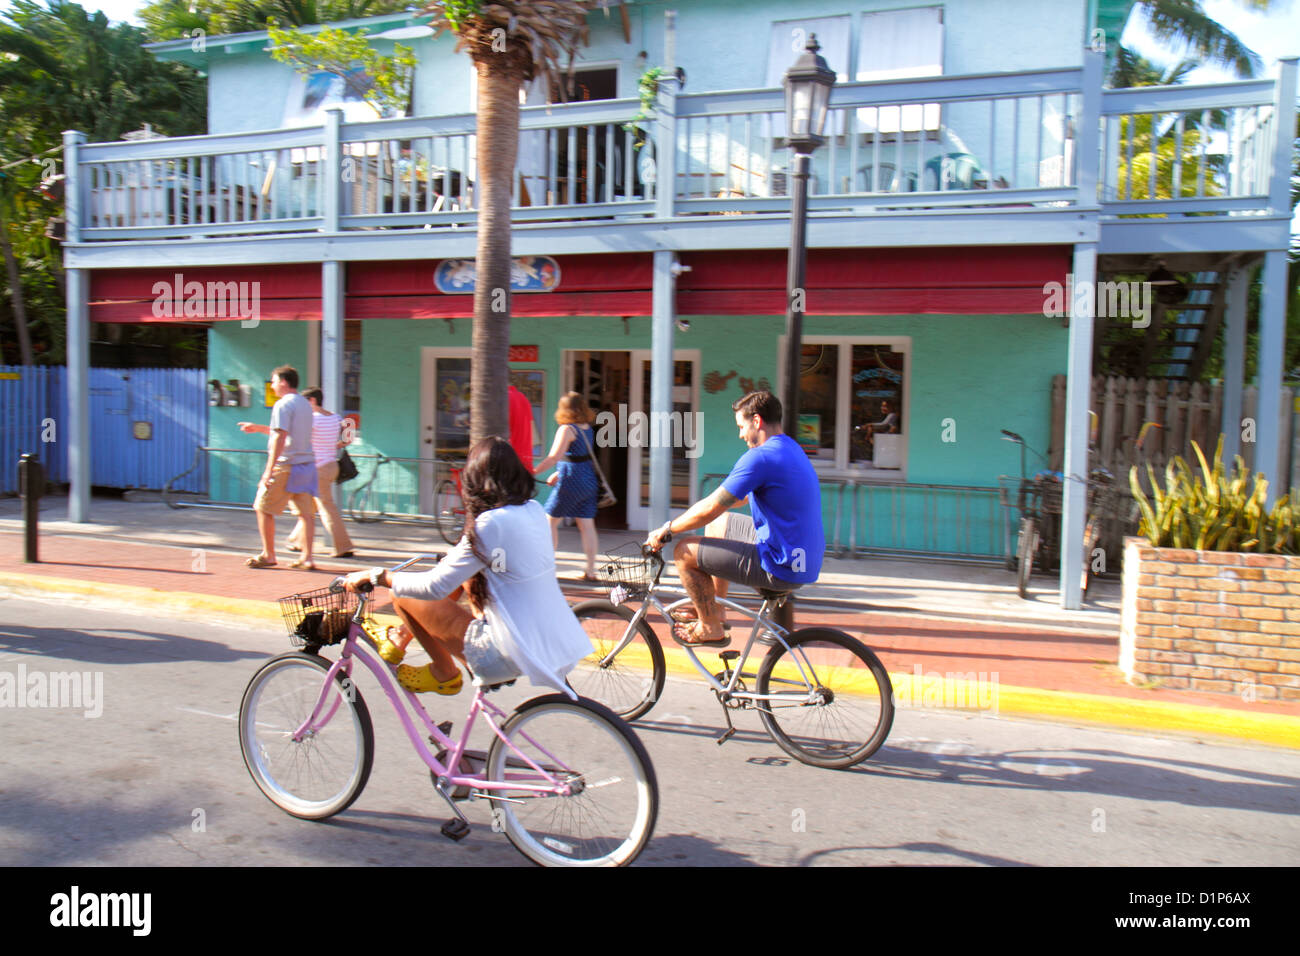 Key West Florida,Keys Bahamas Village,Petronia Street,homme hommes,femme femmes,couple,équitation,vélos,location,FL121125247 Banque D'Images